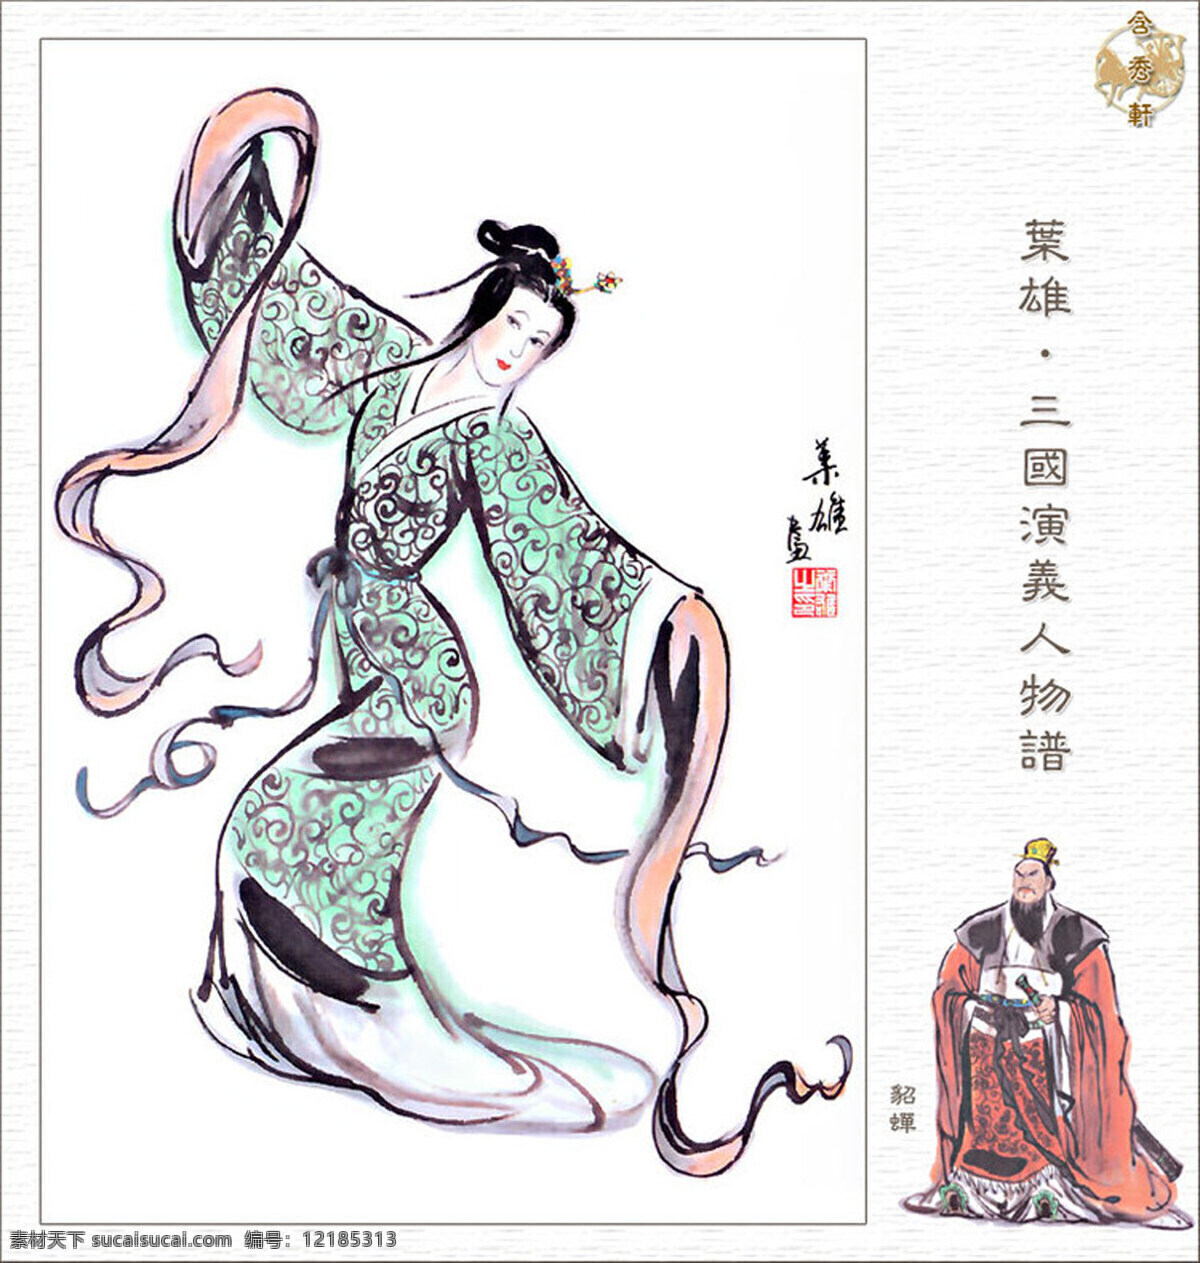 貂蝉 三国 国画 人物 工笔 写意 写实 传统文化 三国演义 绘画书法 文化艺术